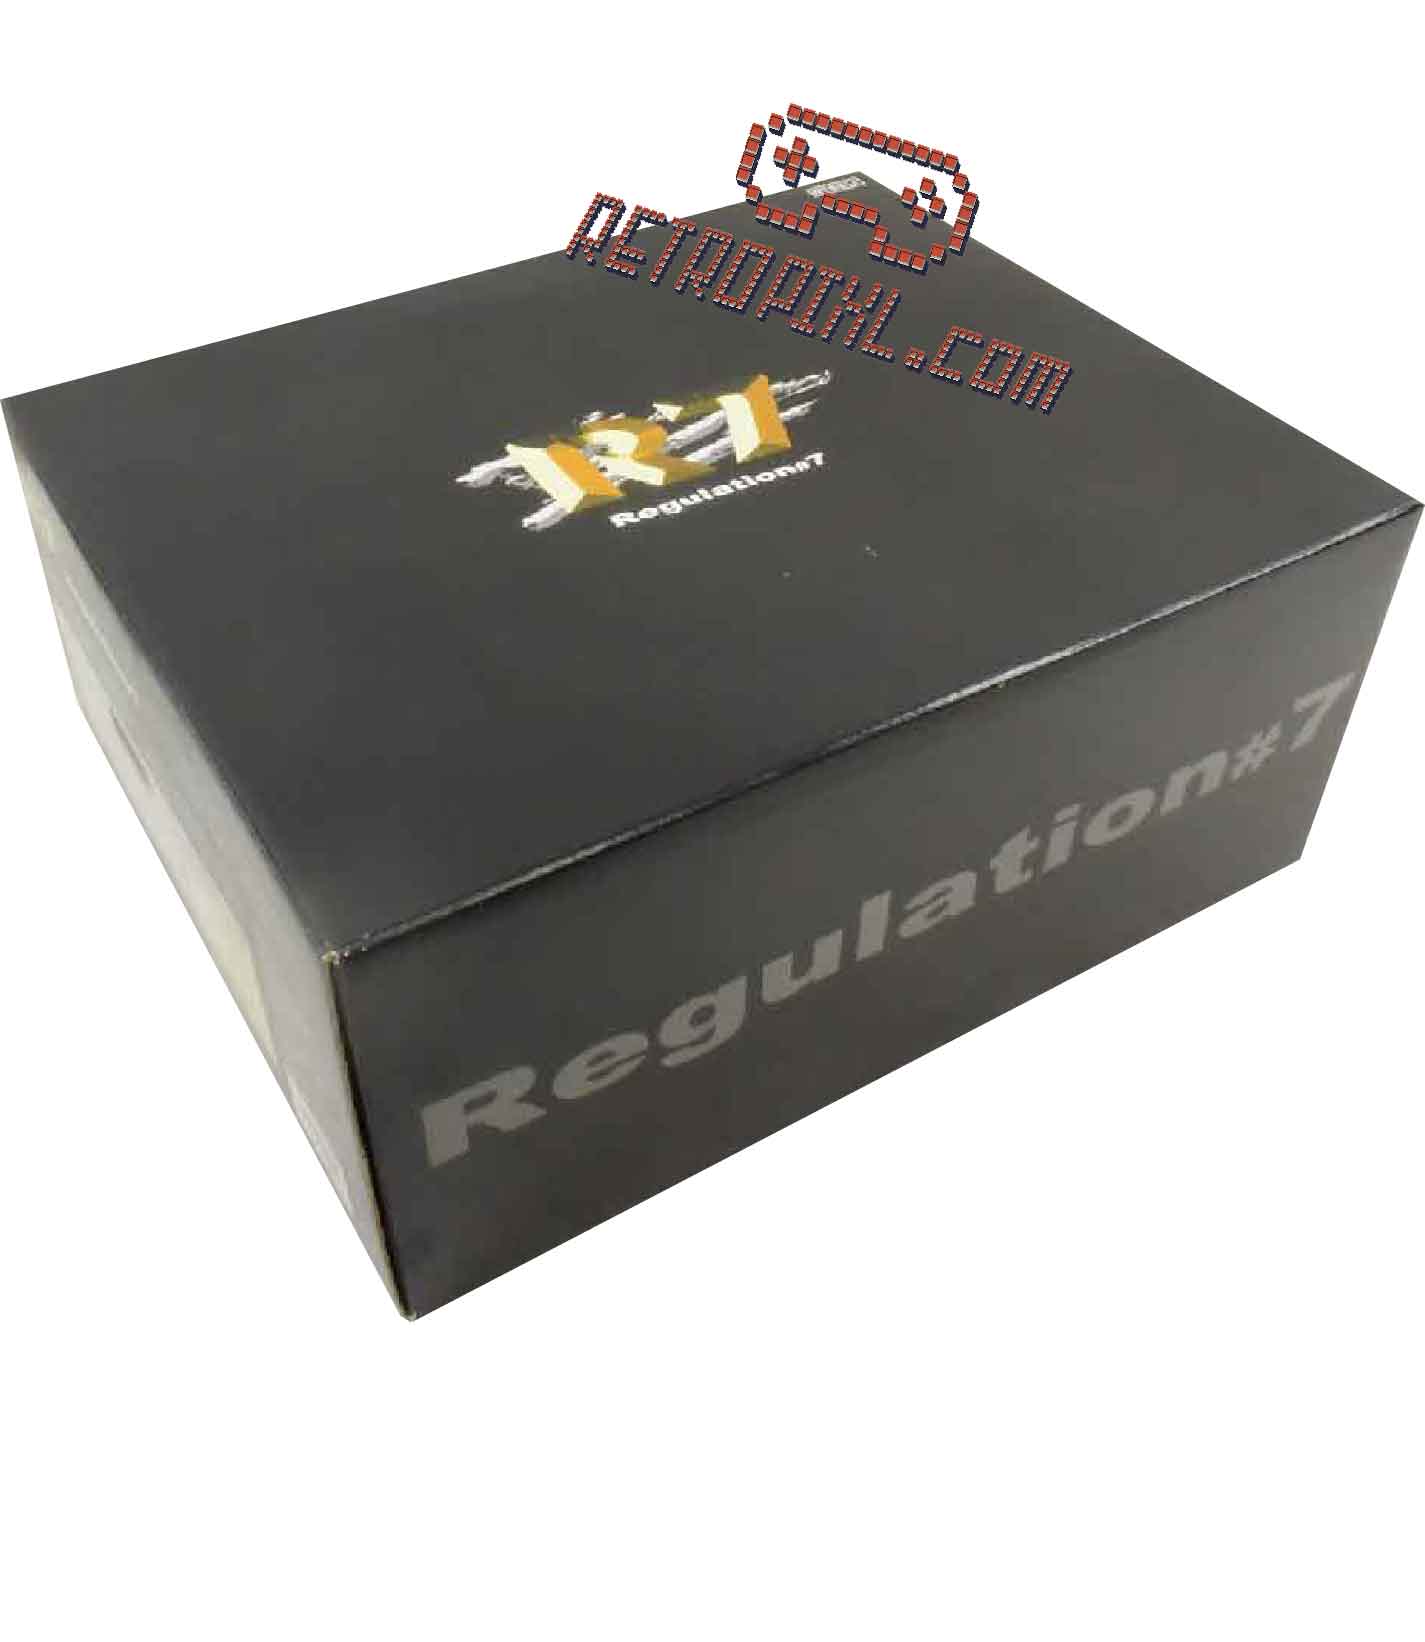 Sega Dreamcast Regulation 7 R7 Retropixl retrogaming Limited Edition 